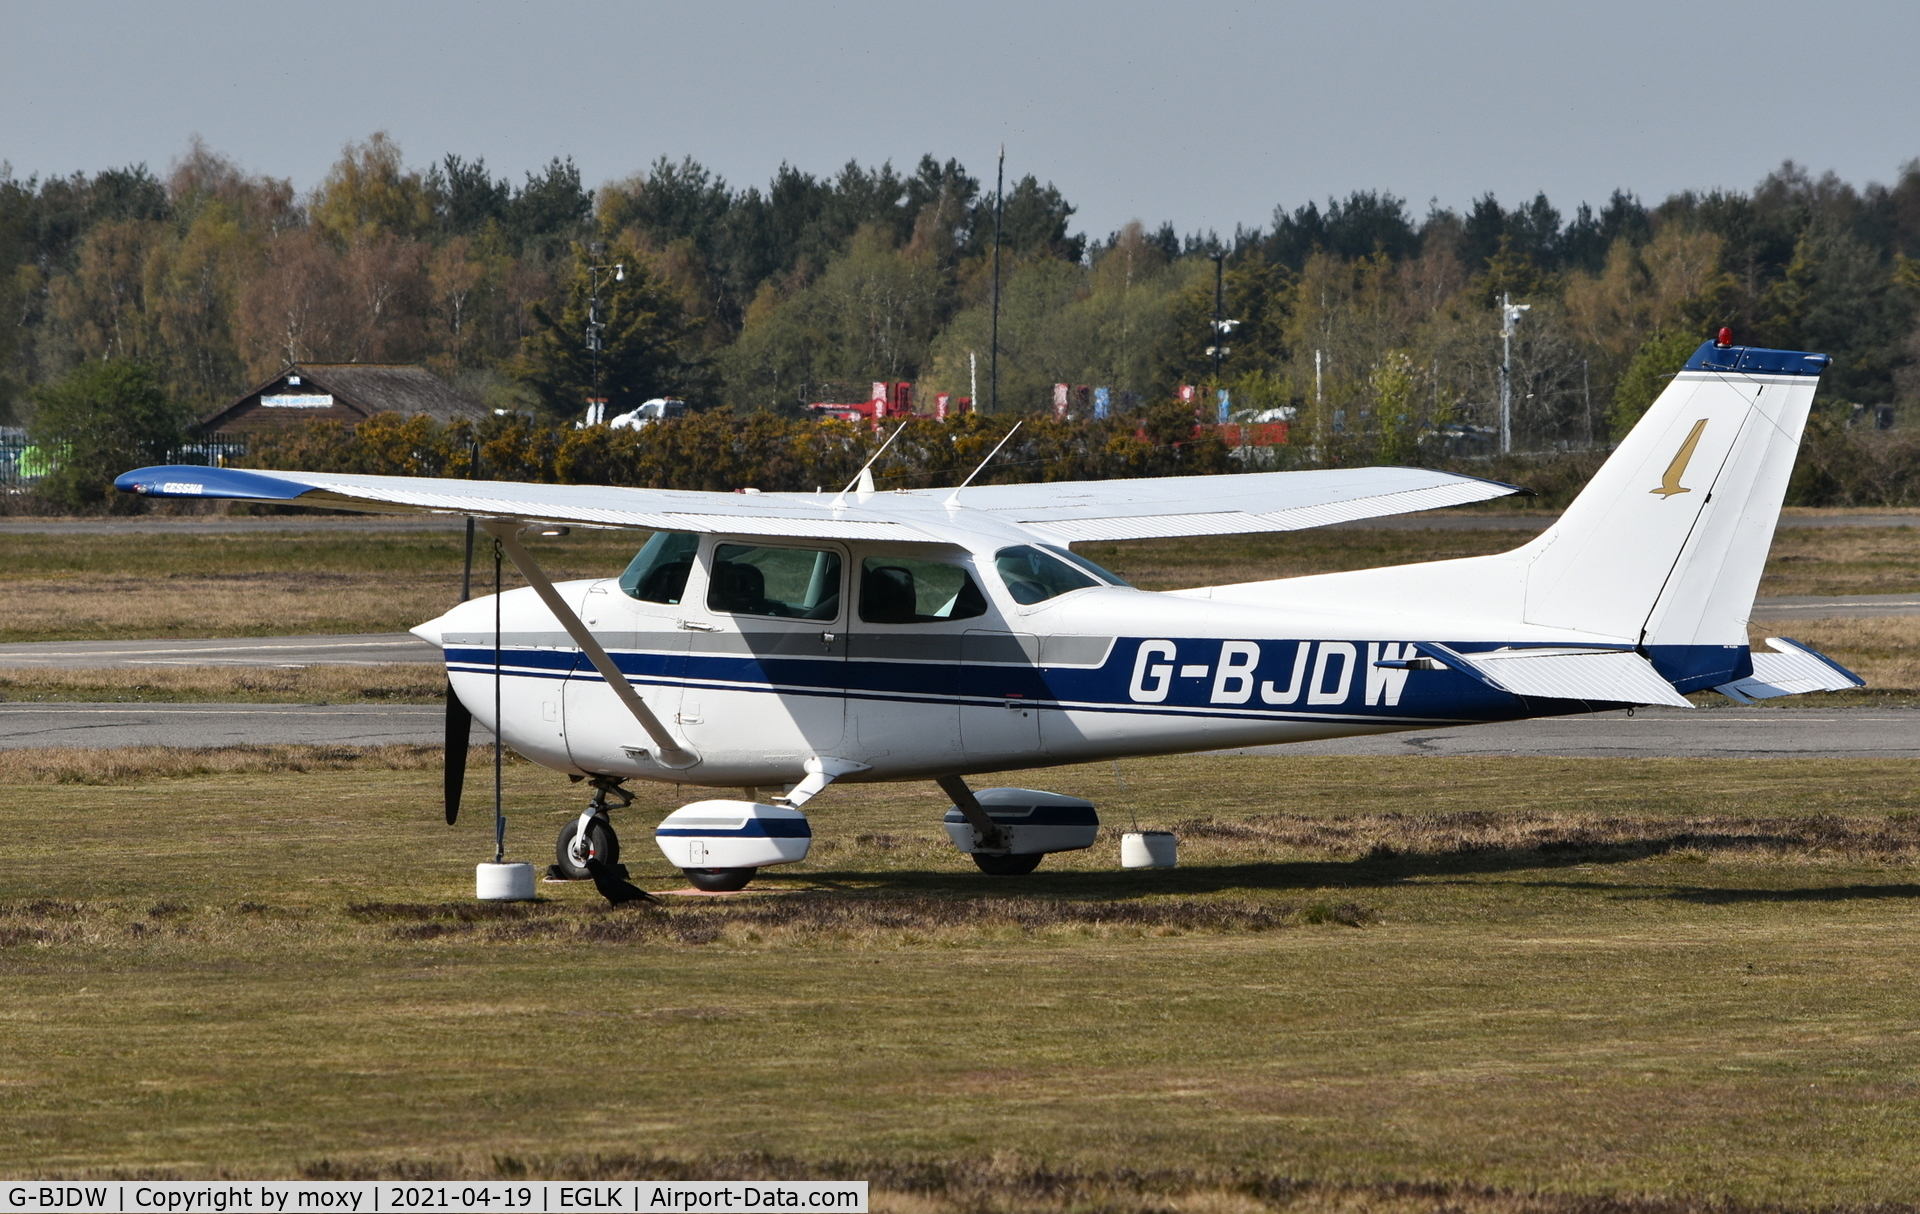 G-BJDW, 1976 Reims F172M Skyhawk Skyhawk C/N 1417, Reims Cessna F172M Skyhawk at Blackbushe. Ex PH-JBE